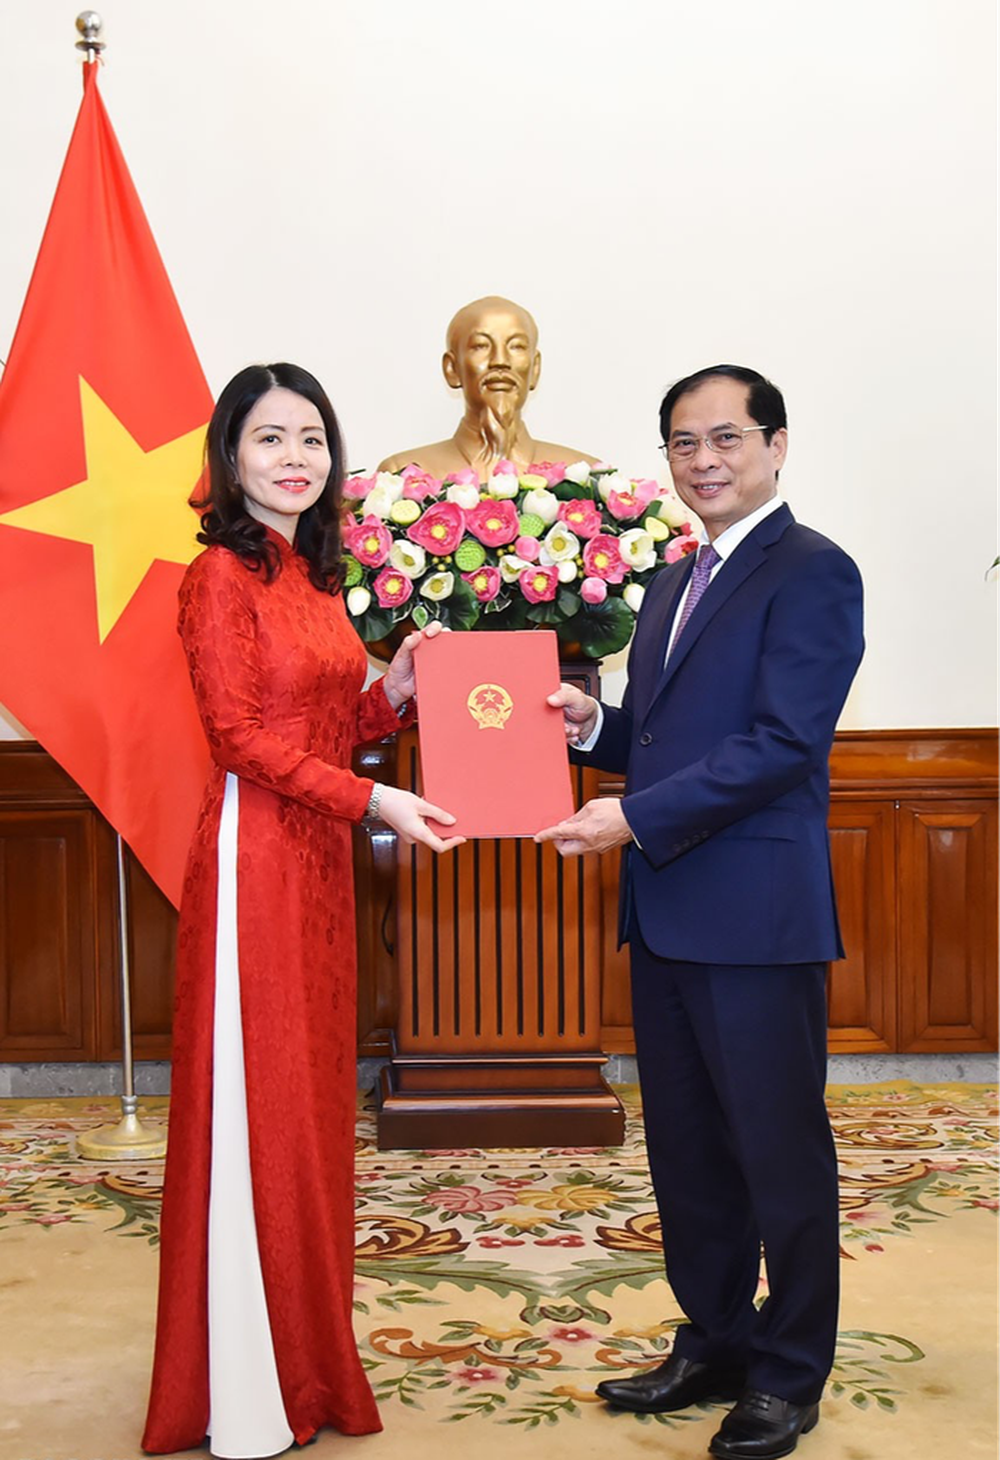 Trao quyết định bổ nhiệm Thứ trưởng Ngoại giao cho bà Nguyễn Minh Hằng - Ảnh 1.